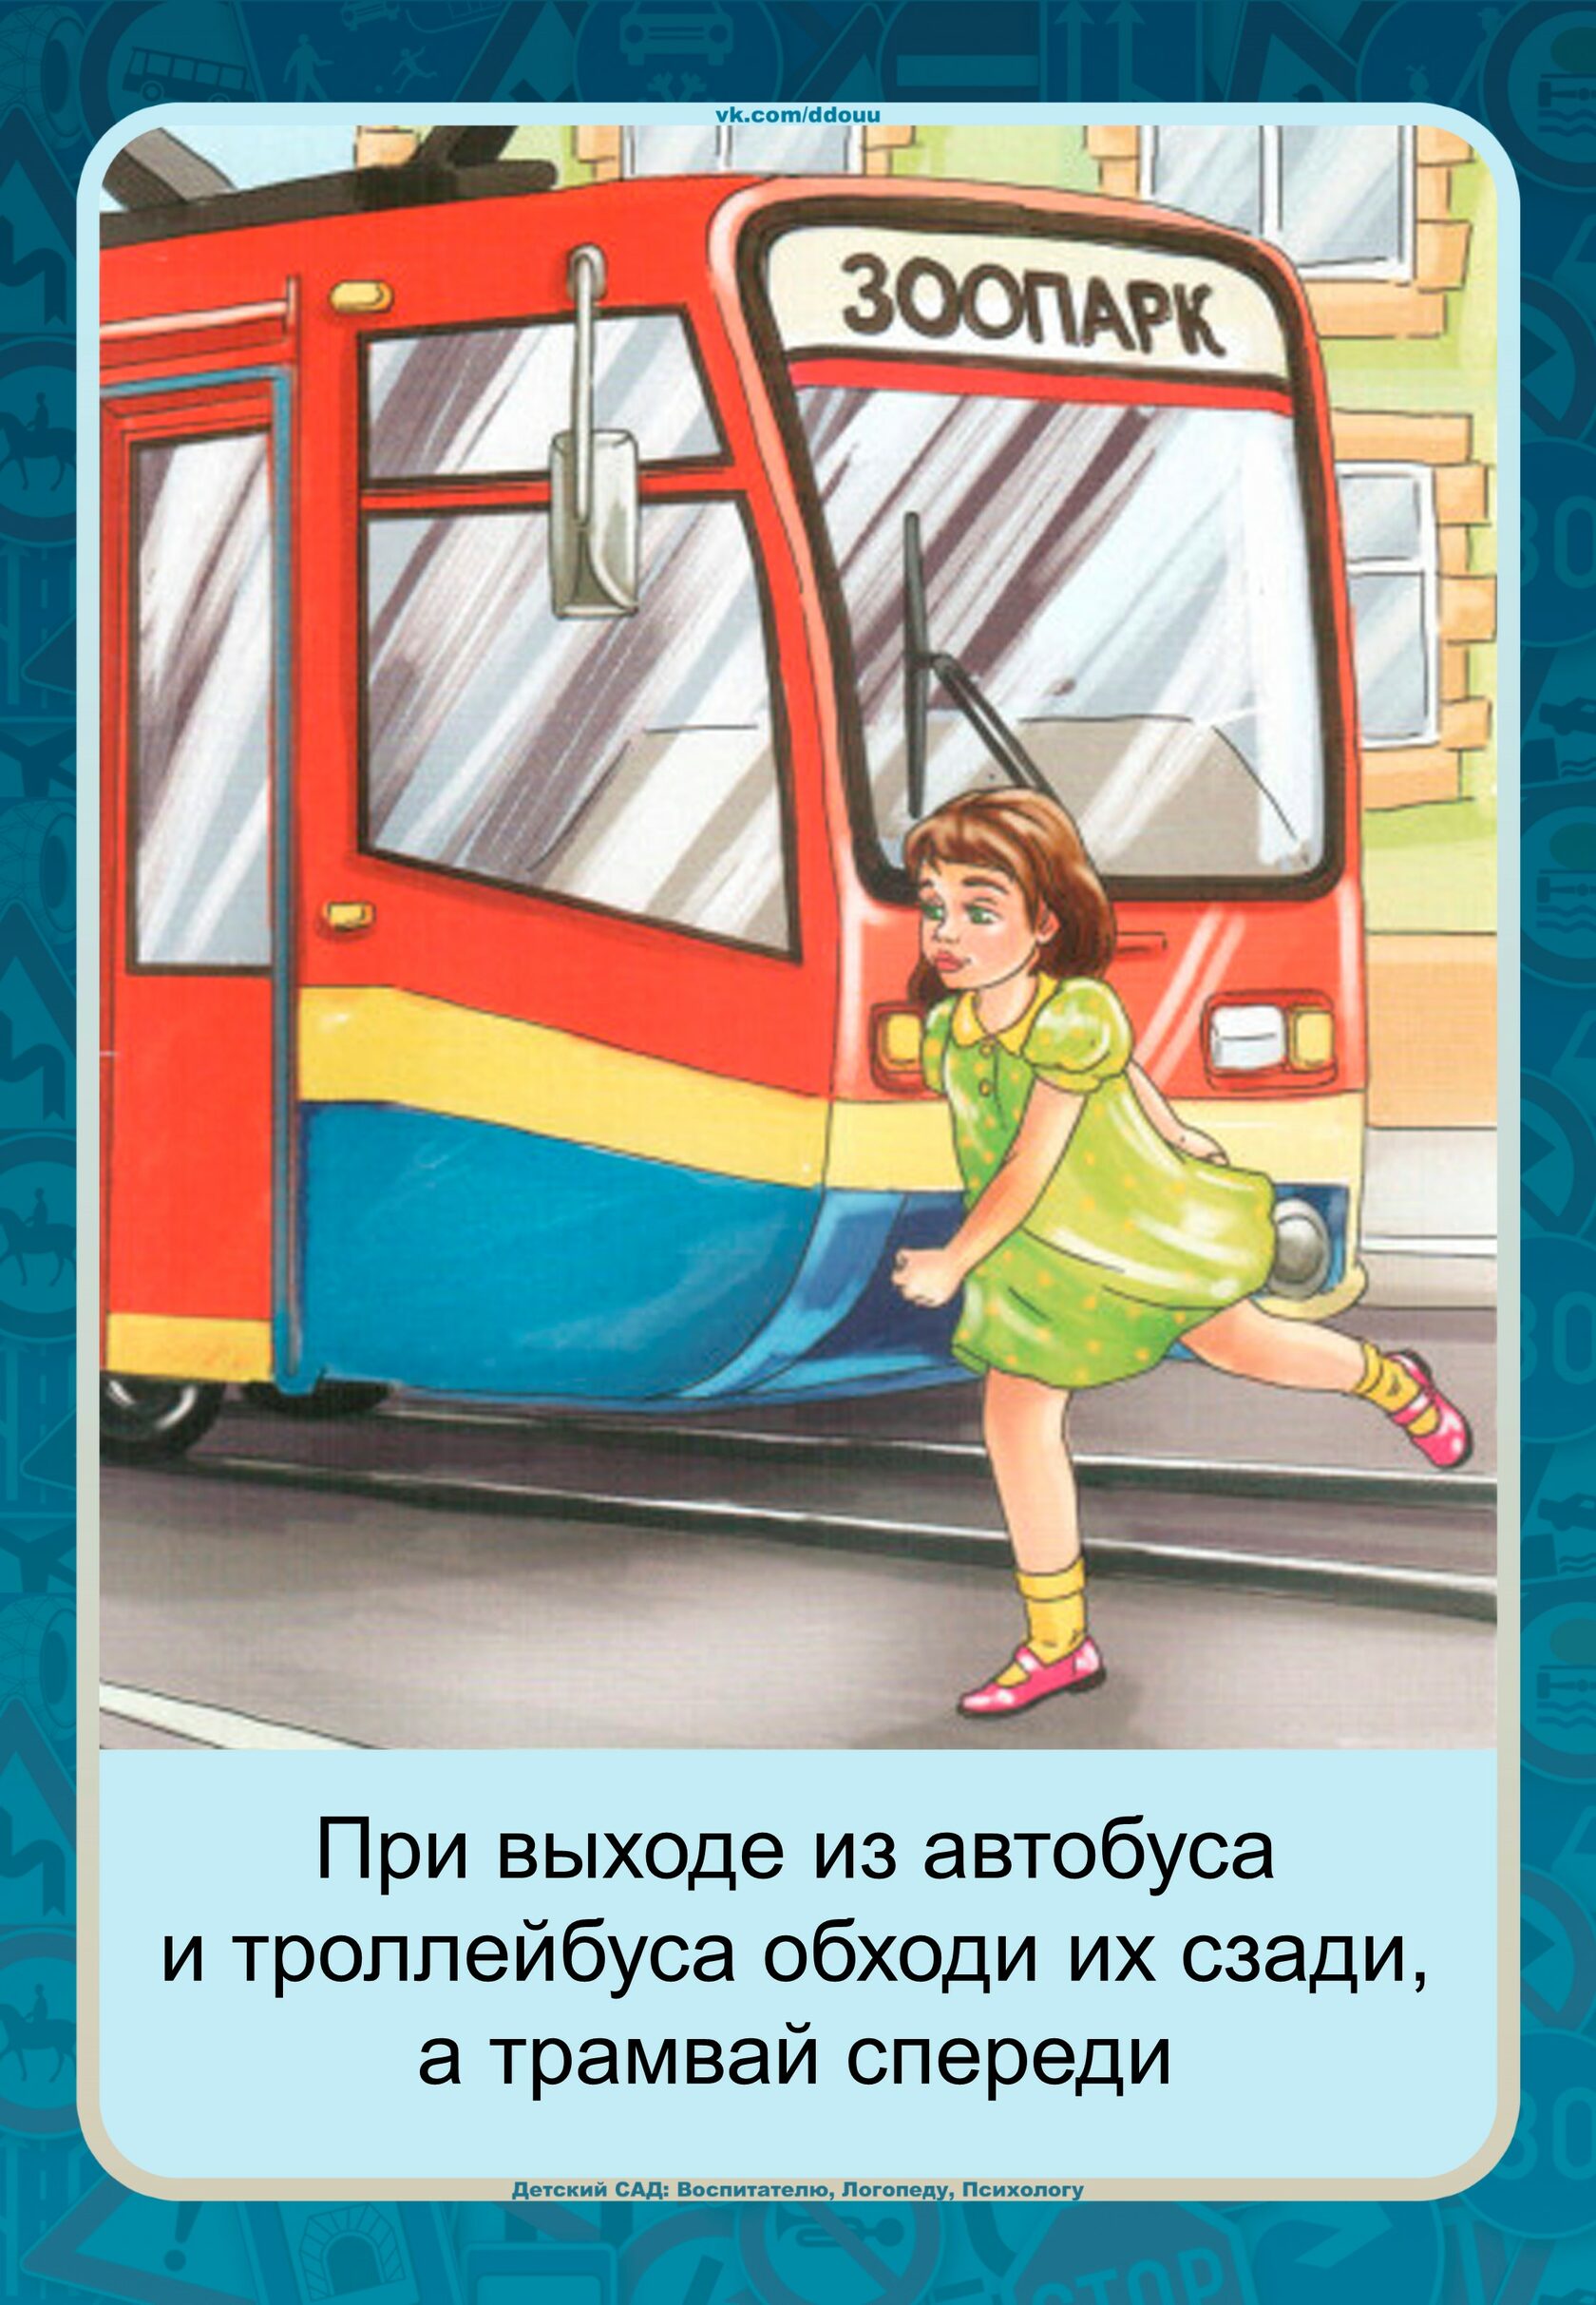 ПДД для детей трамвай